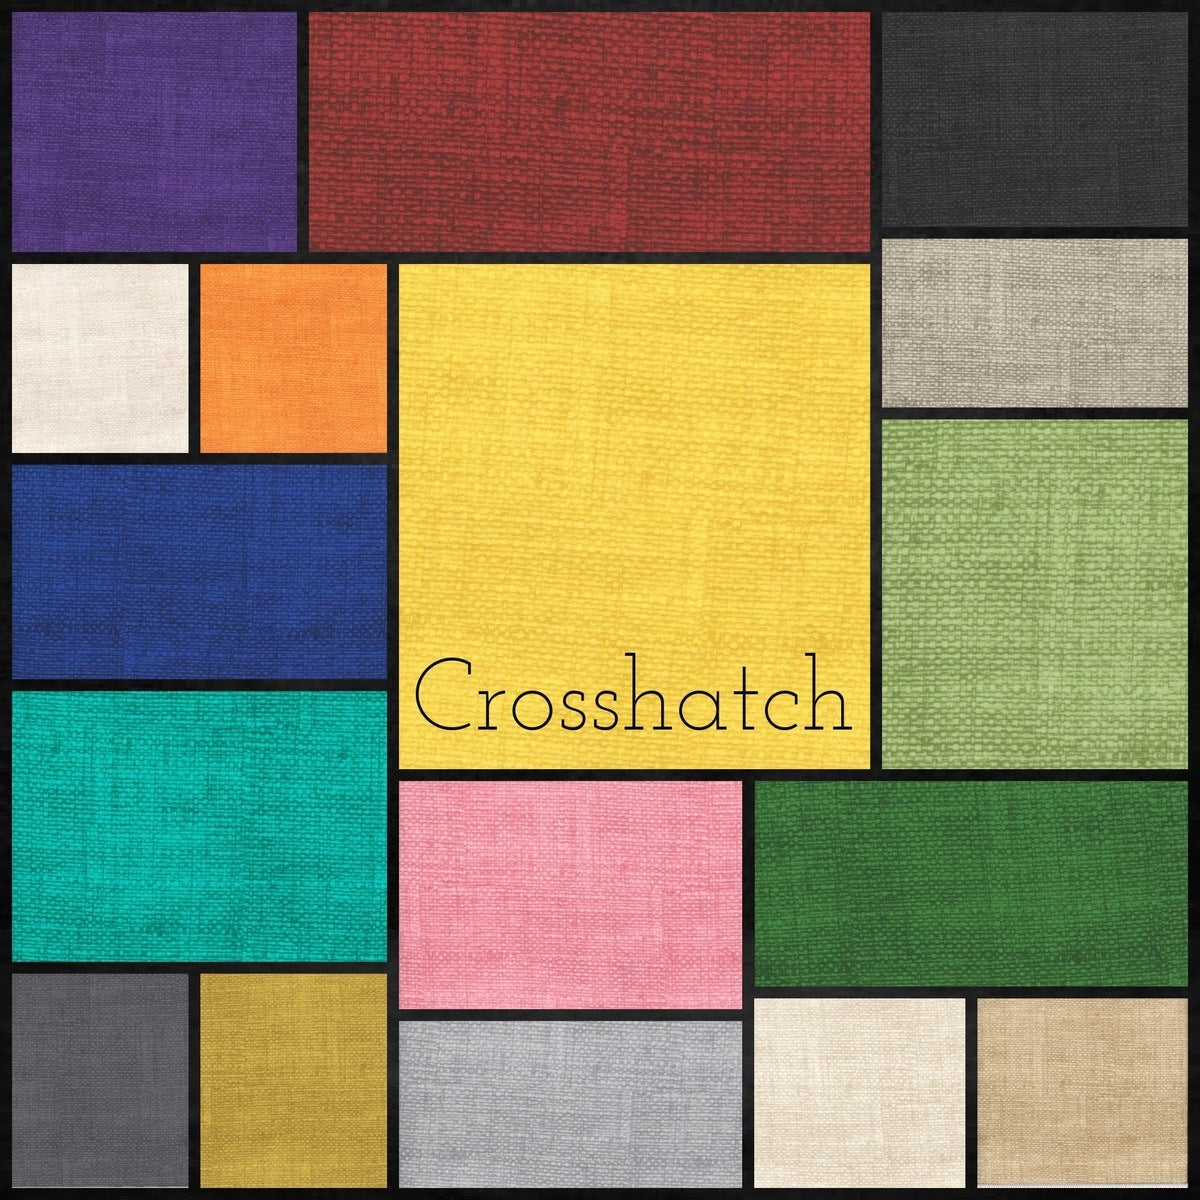 34 Crosshatch Mix pre cut 10" squares 100% cotton fabric quilt